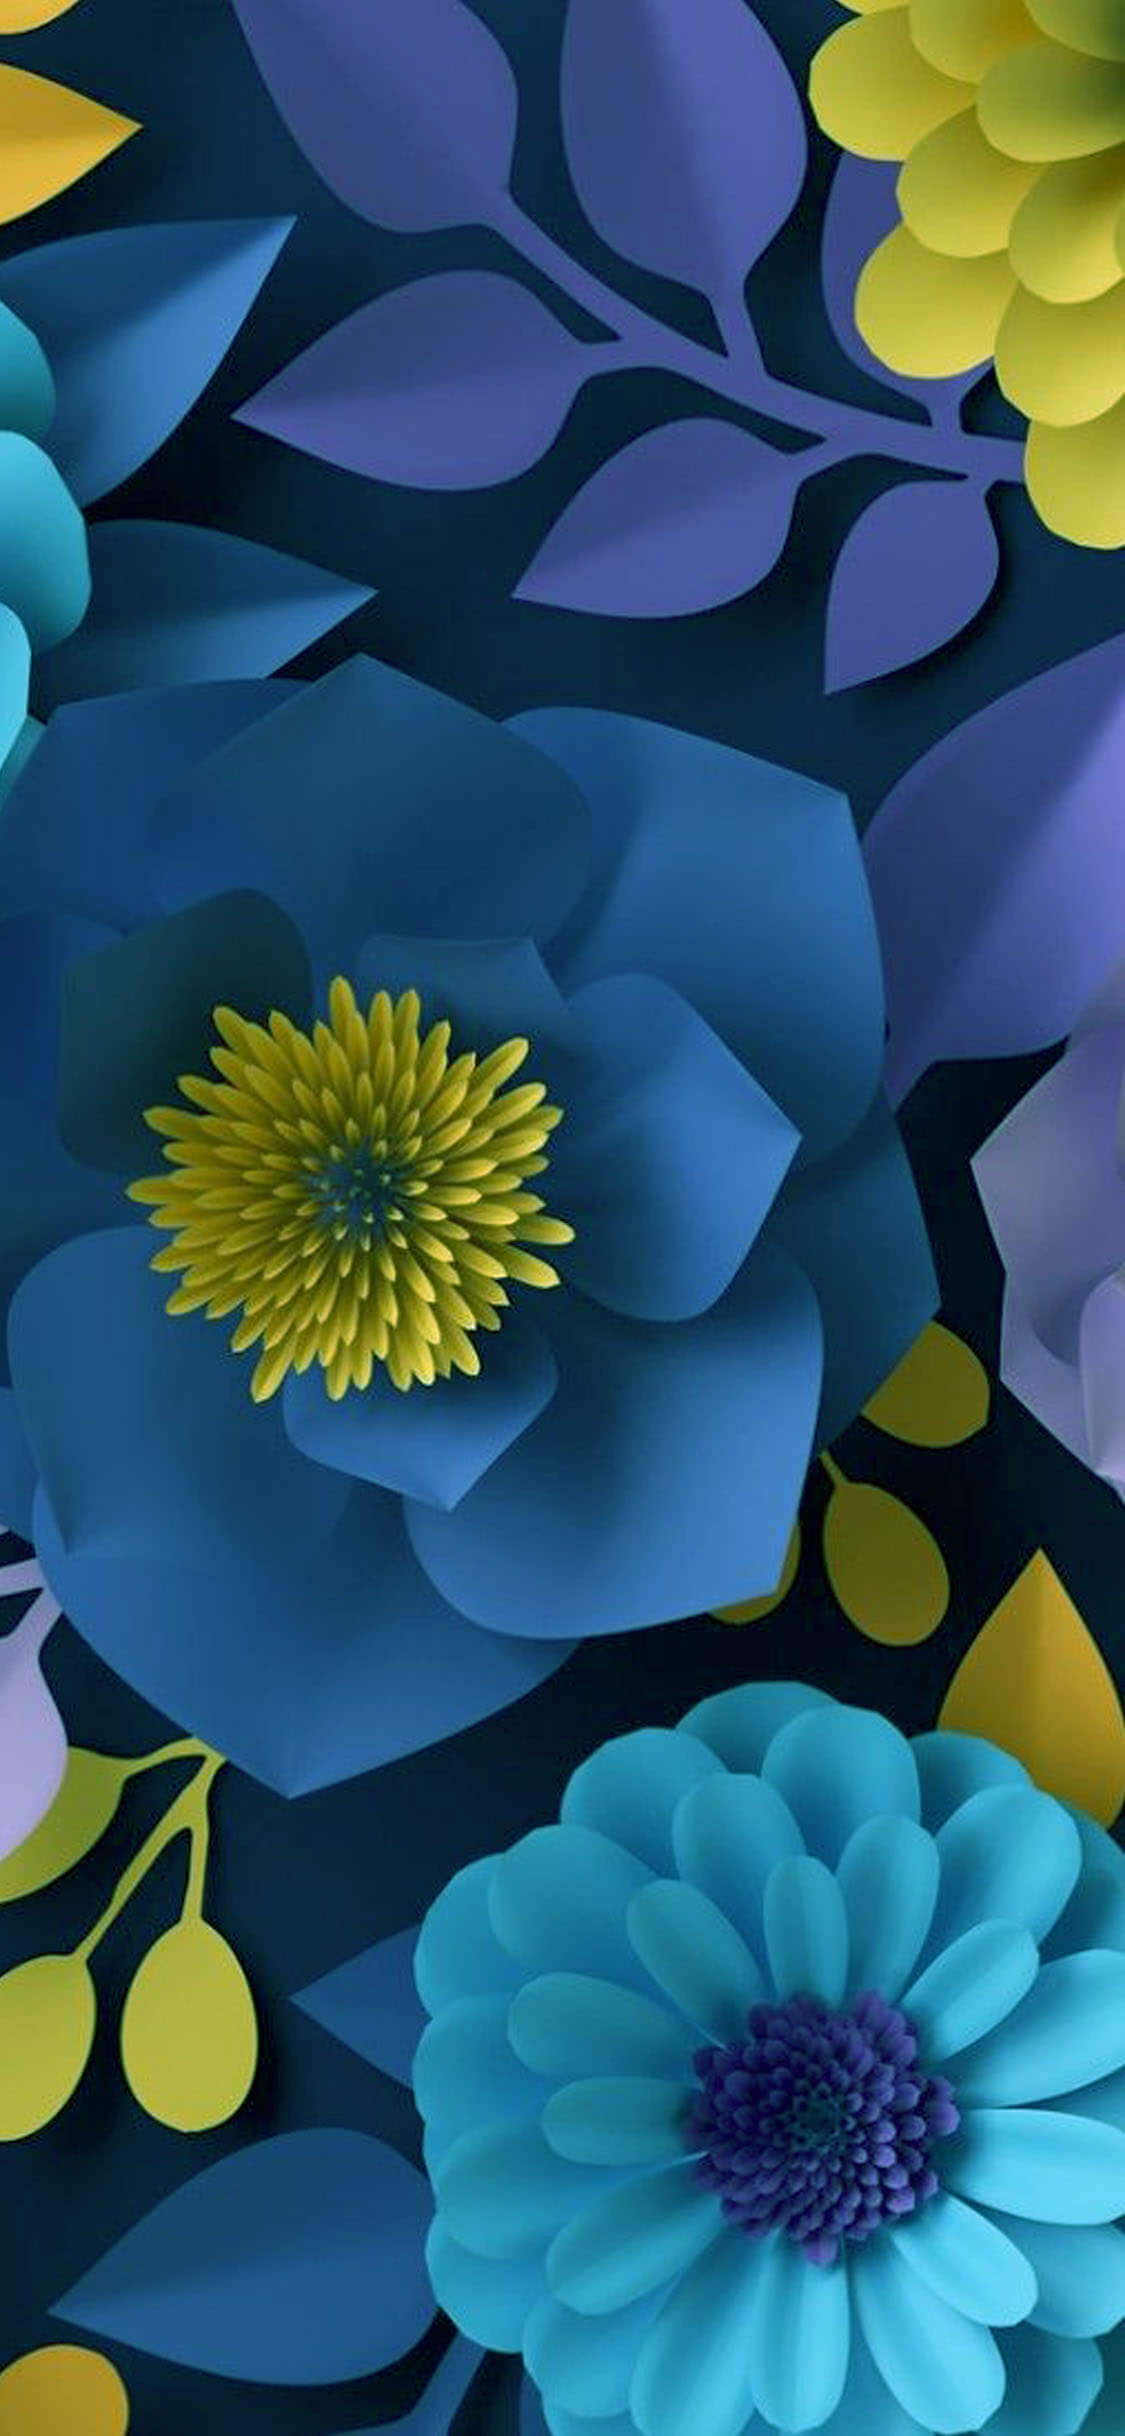 Flower Wall Wallpaper Iphone - ️ ༻⚜༺ iPhone Wallpaper ༻⚜༺ ️ ༻⚜